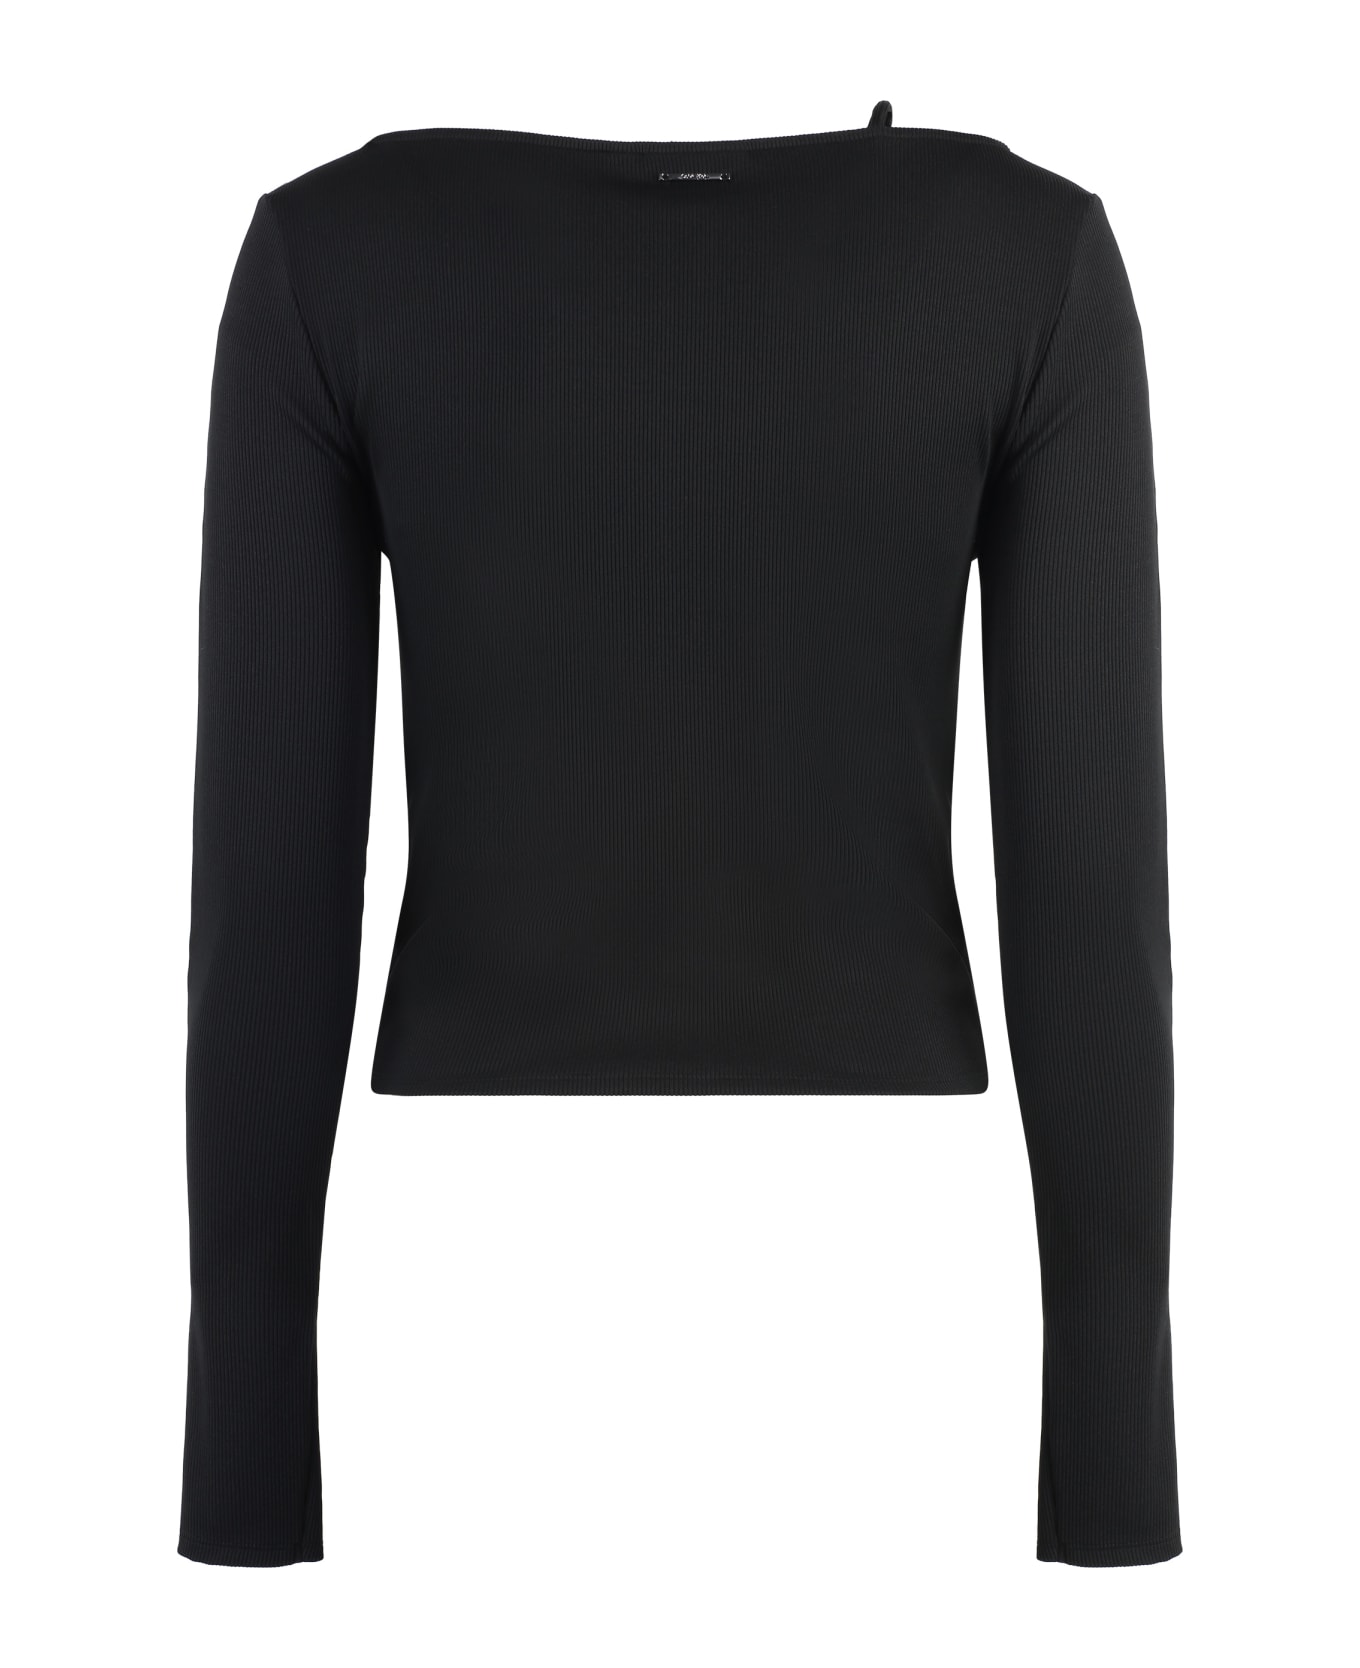 Calvin Klein Long-sleeve Top - black